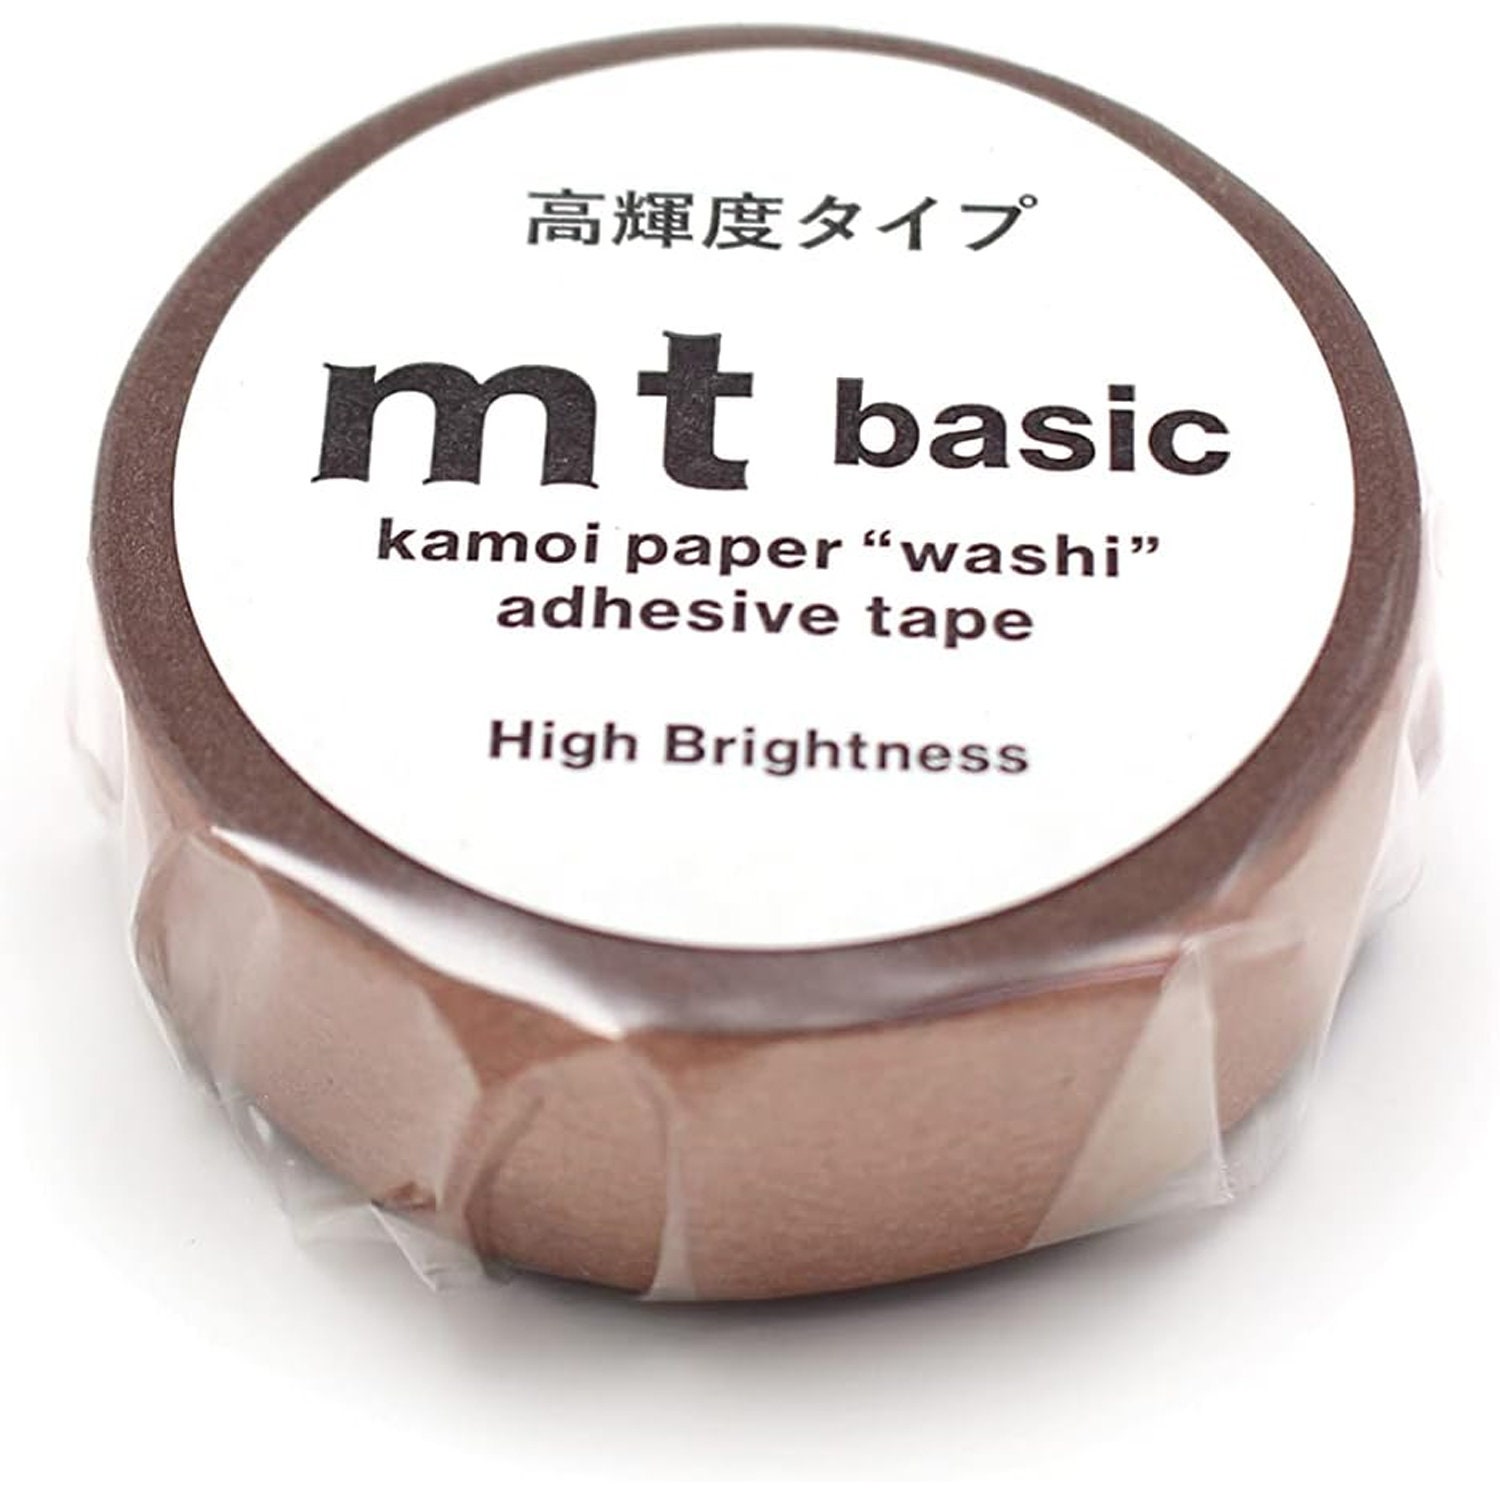 MT Washi Tape 15mm BASIC Series Pastel Scarlet